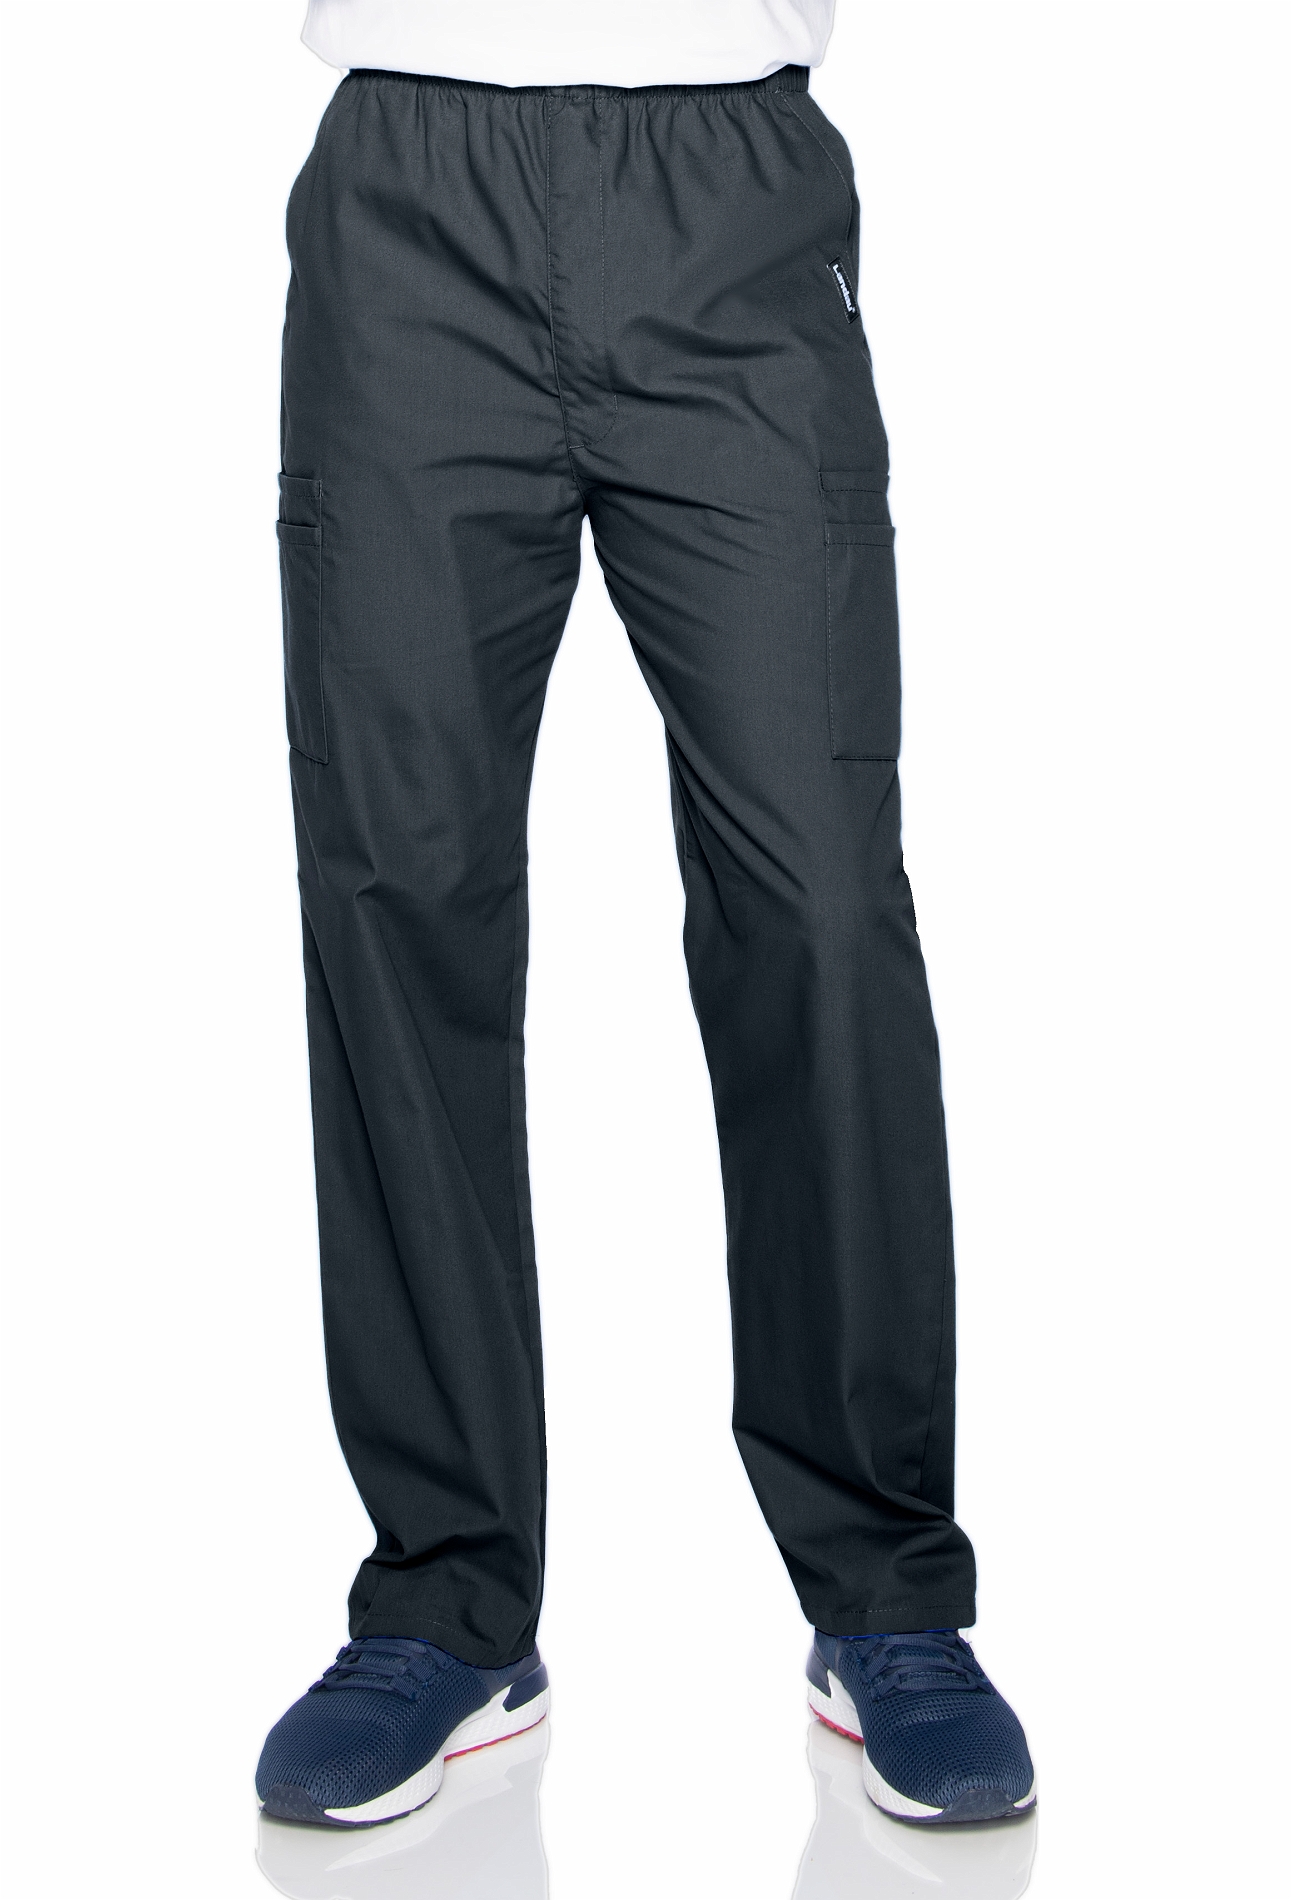 Landau Men's Elastic Waist Cargo Scrub Pants-8555 (Graphite - XXXL Short)